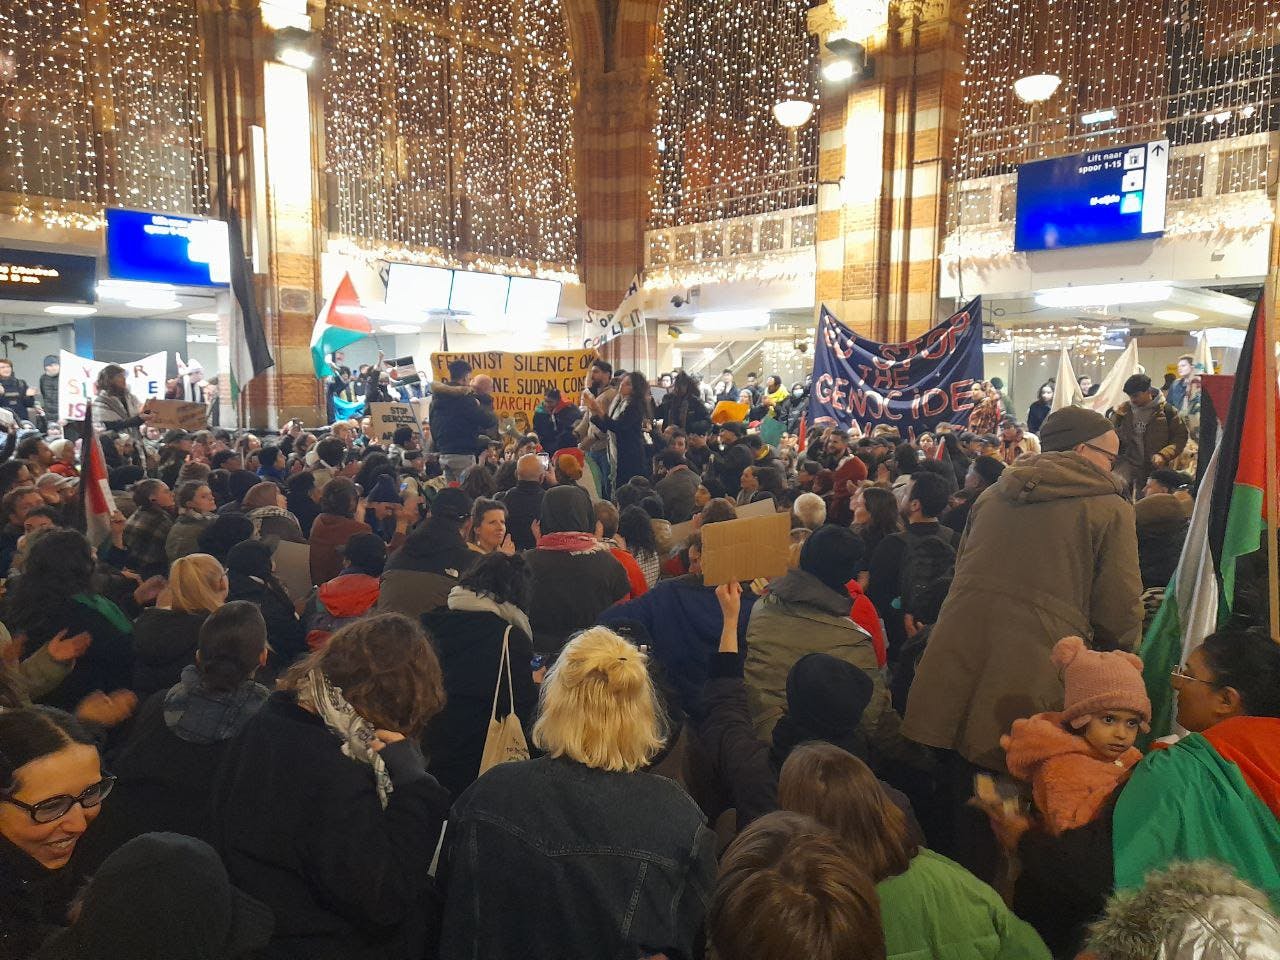 ۷ نوامبر، تحصن خودانگیخته در همبستگی با فلسطین، در ایستگاه قطار مرکزی آمستردام